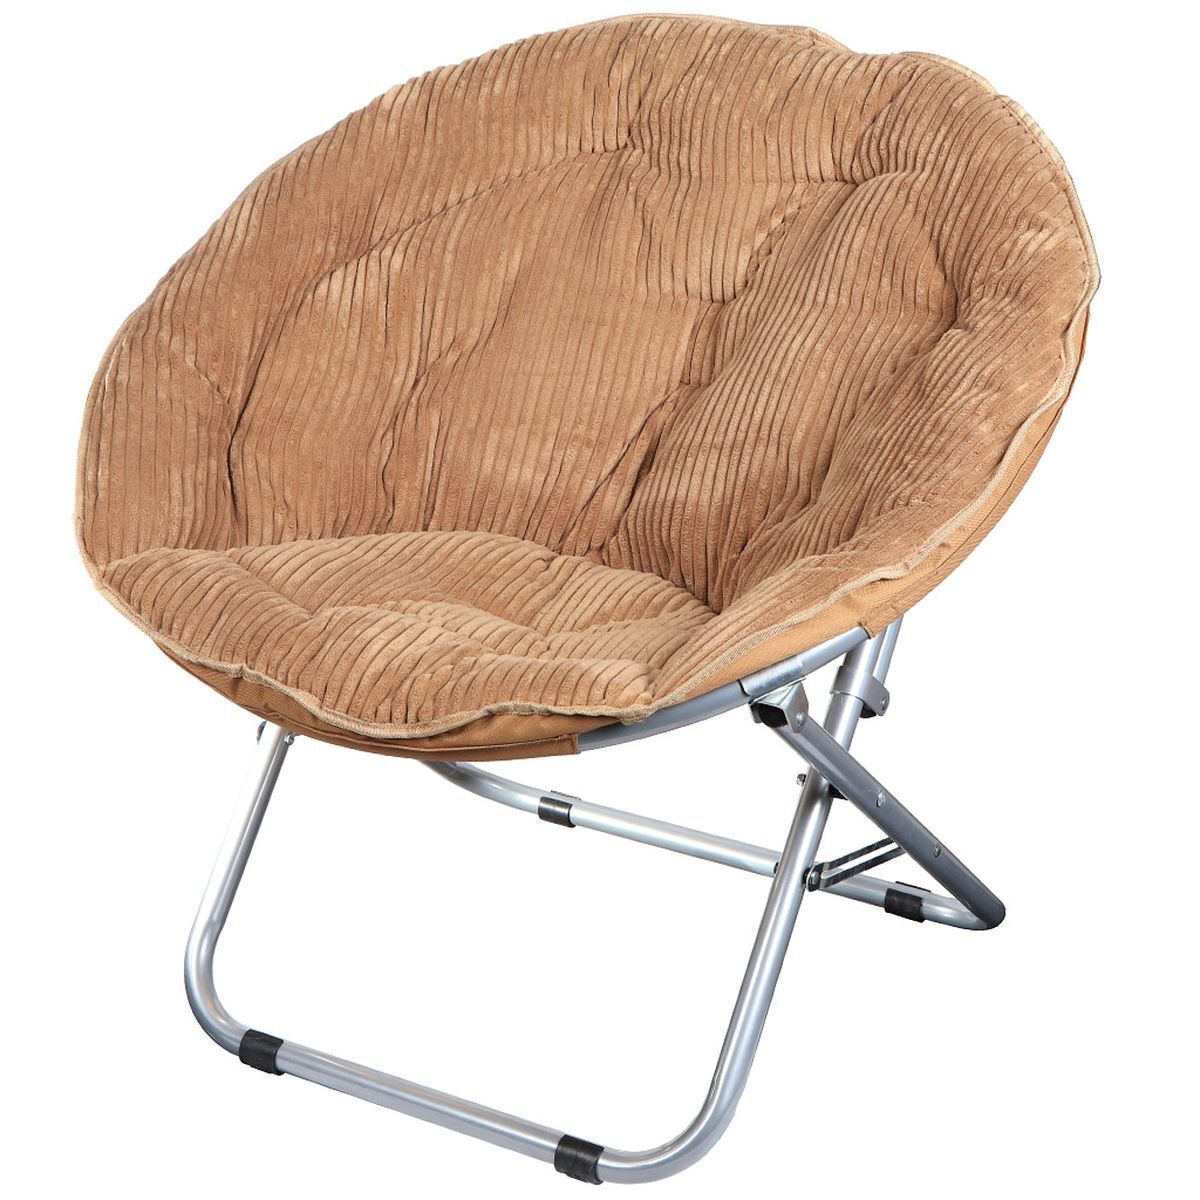 Складное круглое купить. Кресло складное 80х84х78 см, гриб комфорт. Кресло складное Грин дейс. Кресло складное гриб комфорт вельвет. Кресло складное гриб Green Day.